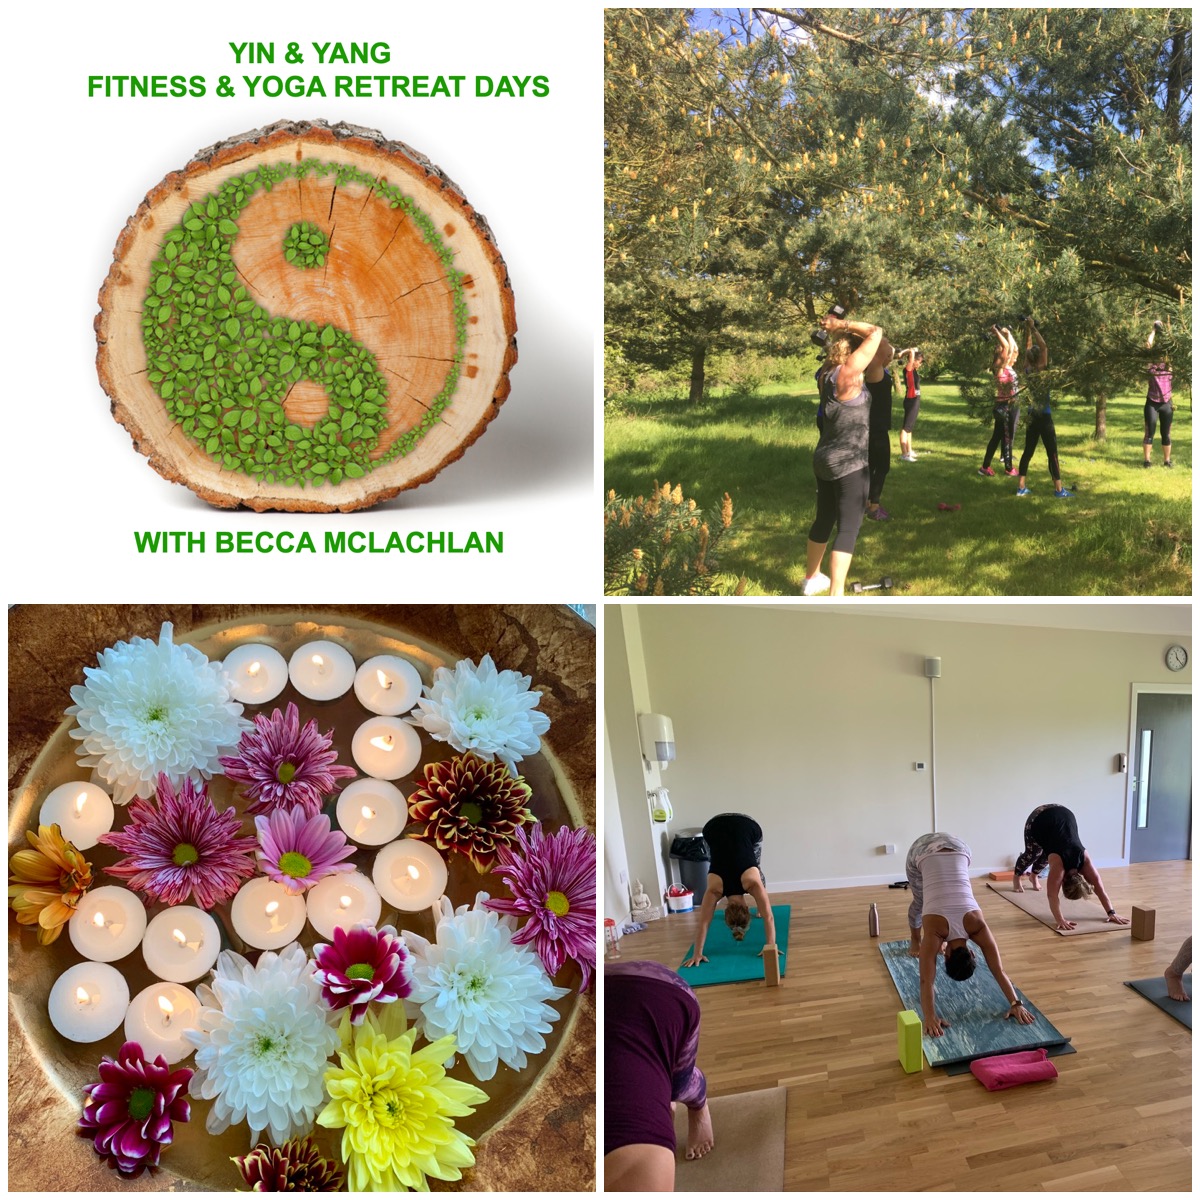 Yin & Yang Fitness & Yoga Small Group Retreat Day - £70